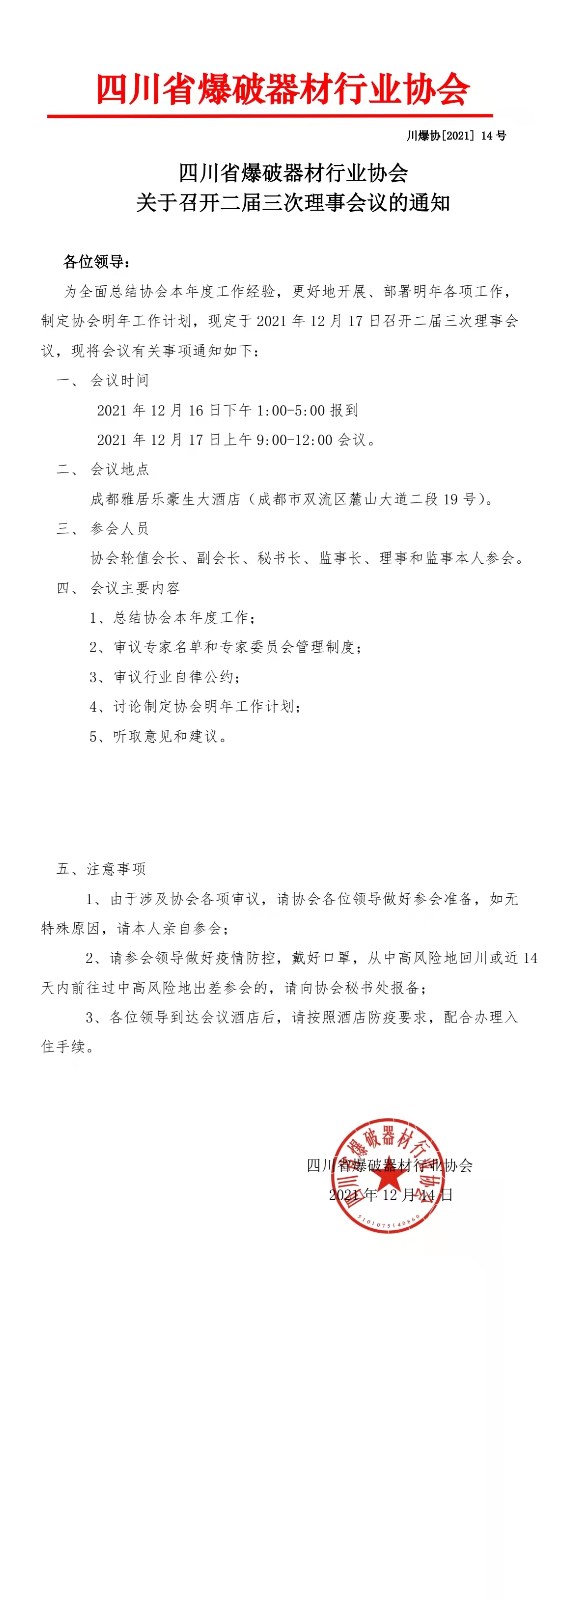 四川省爆破器材行业协会关于召开二届三次理事会议的通知